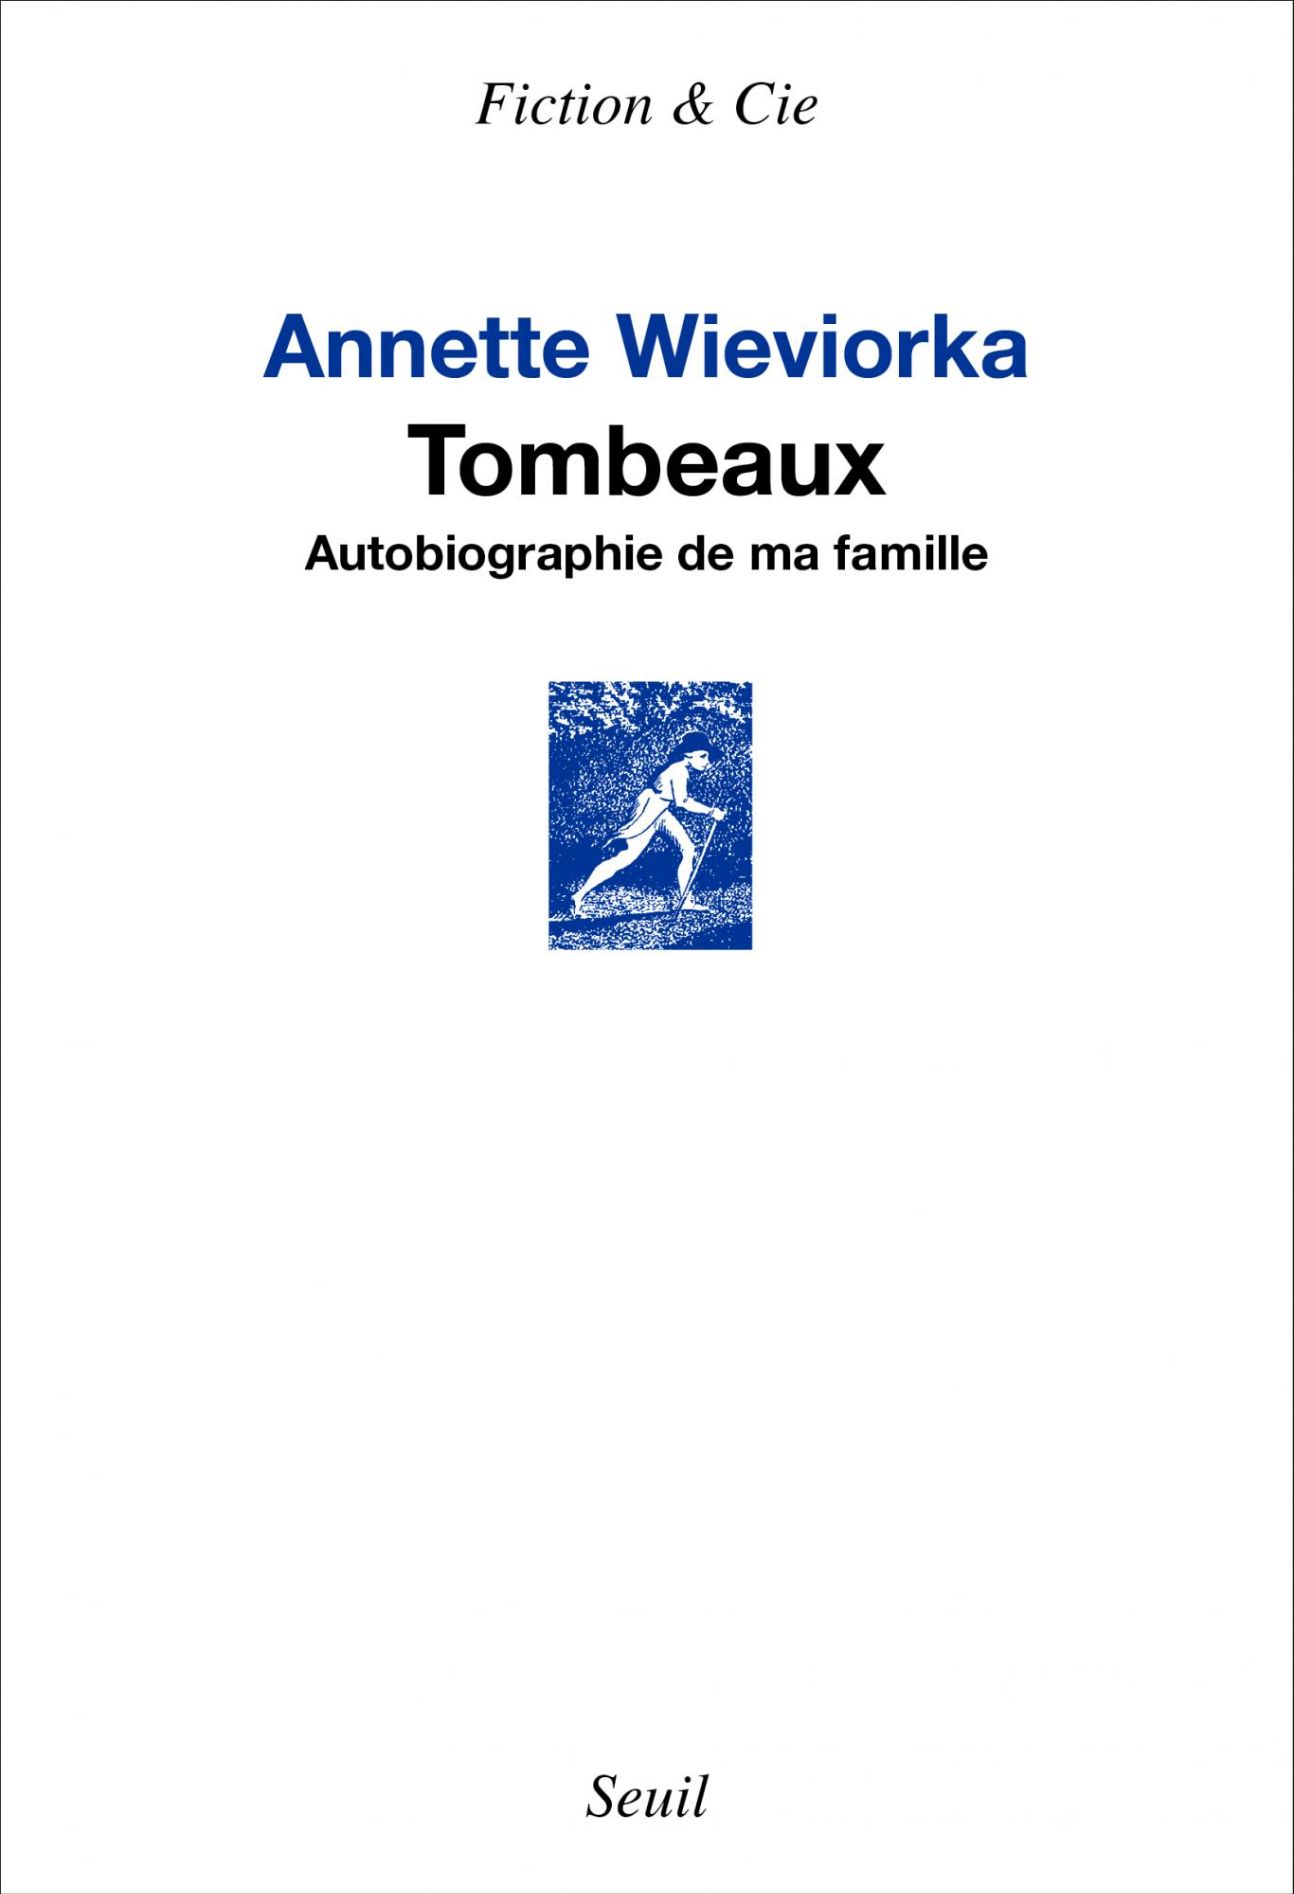 Annette Wieviorka, Tombeaux. Autobiographie de ma famille